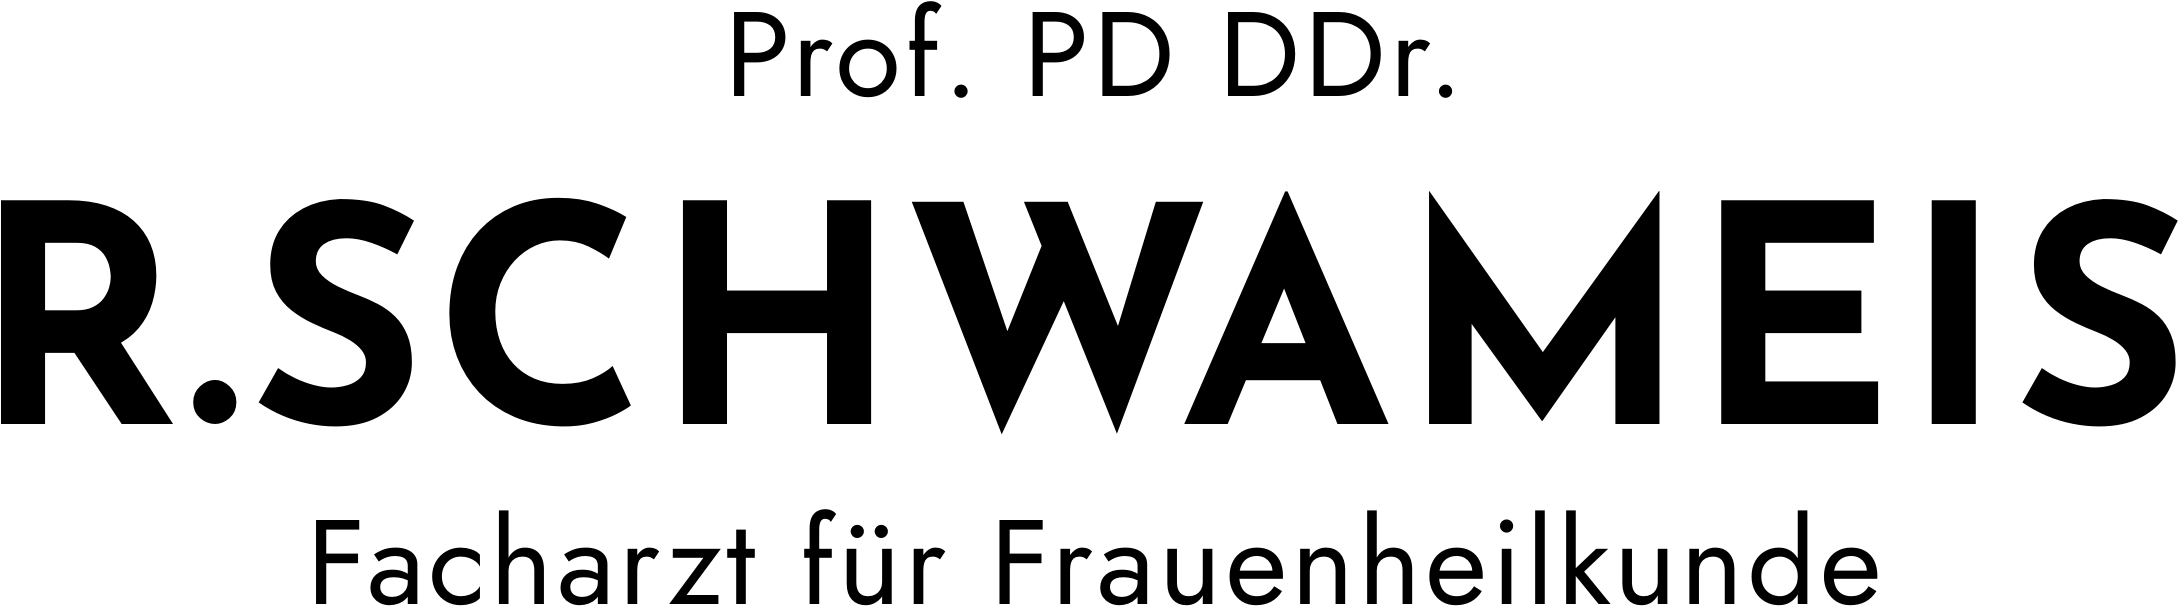 dr schwameis logo ohne symbol